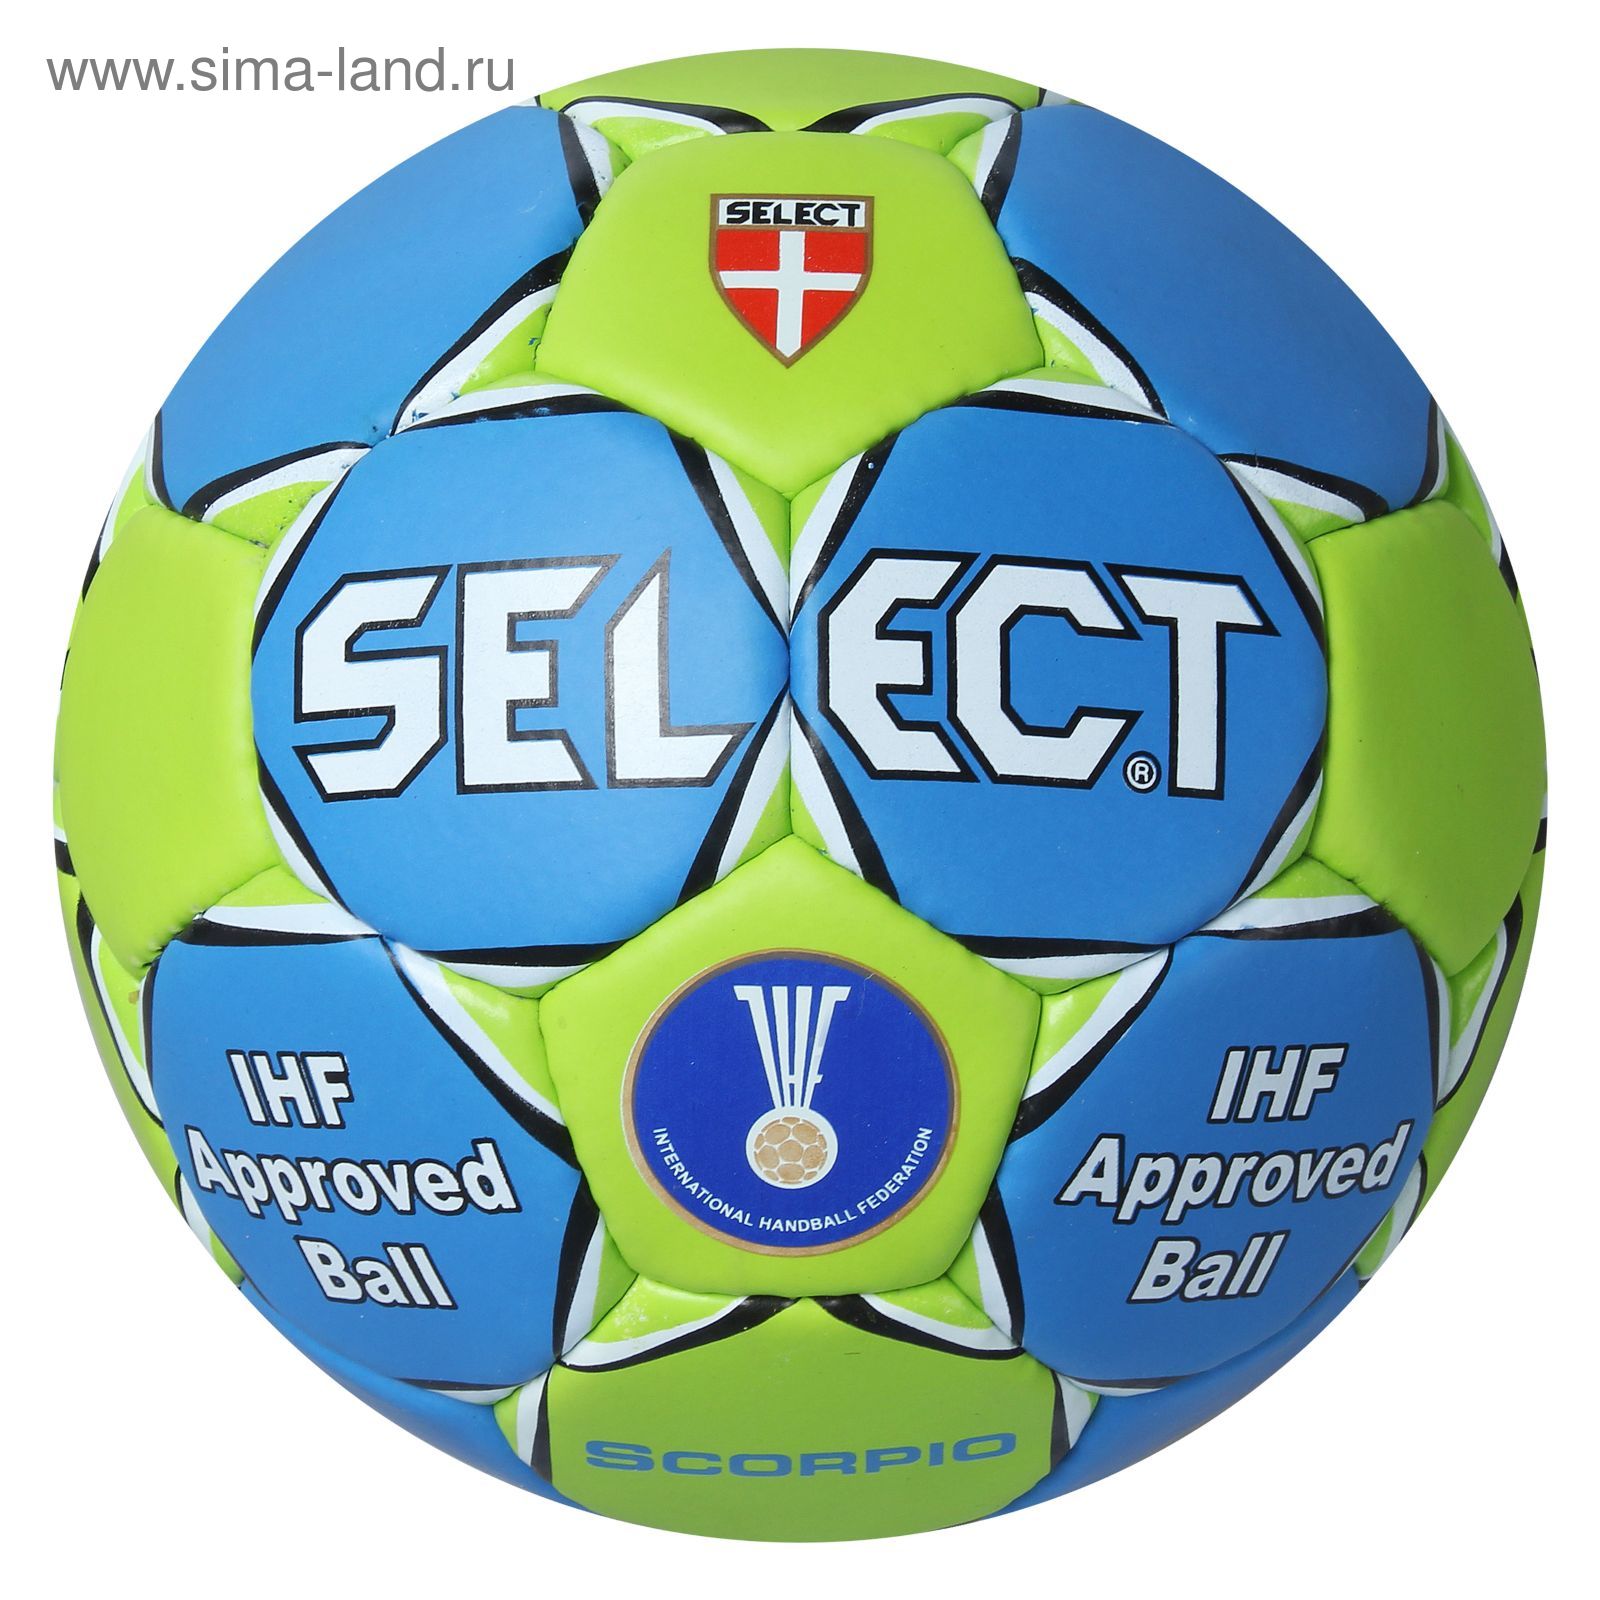 Мяч гандбольный Select Scorpio IHF, 801315-242 Senior, размер 3